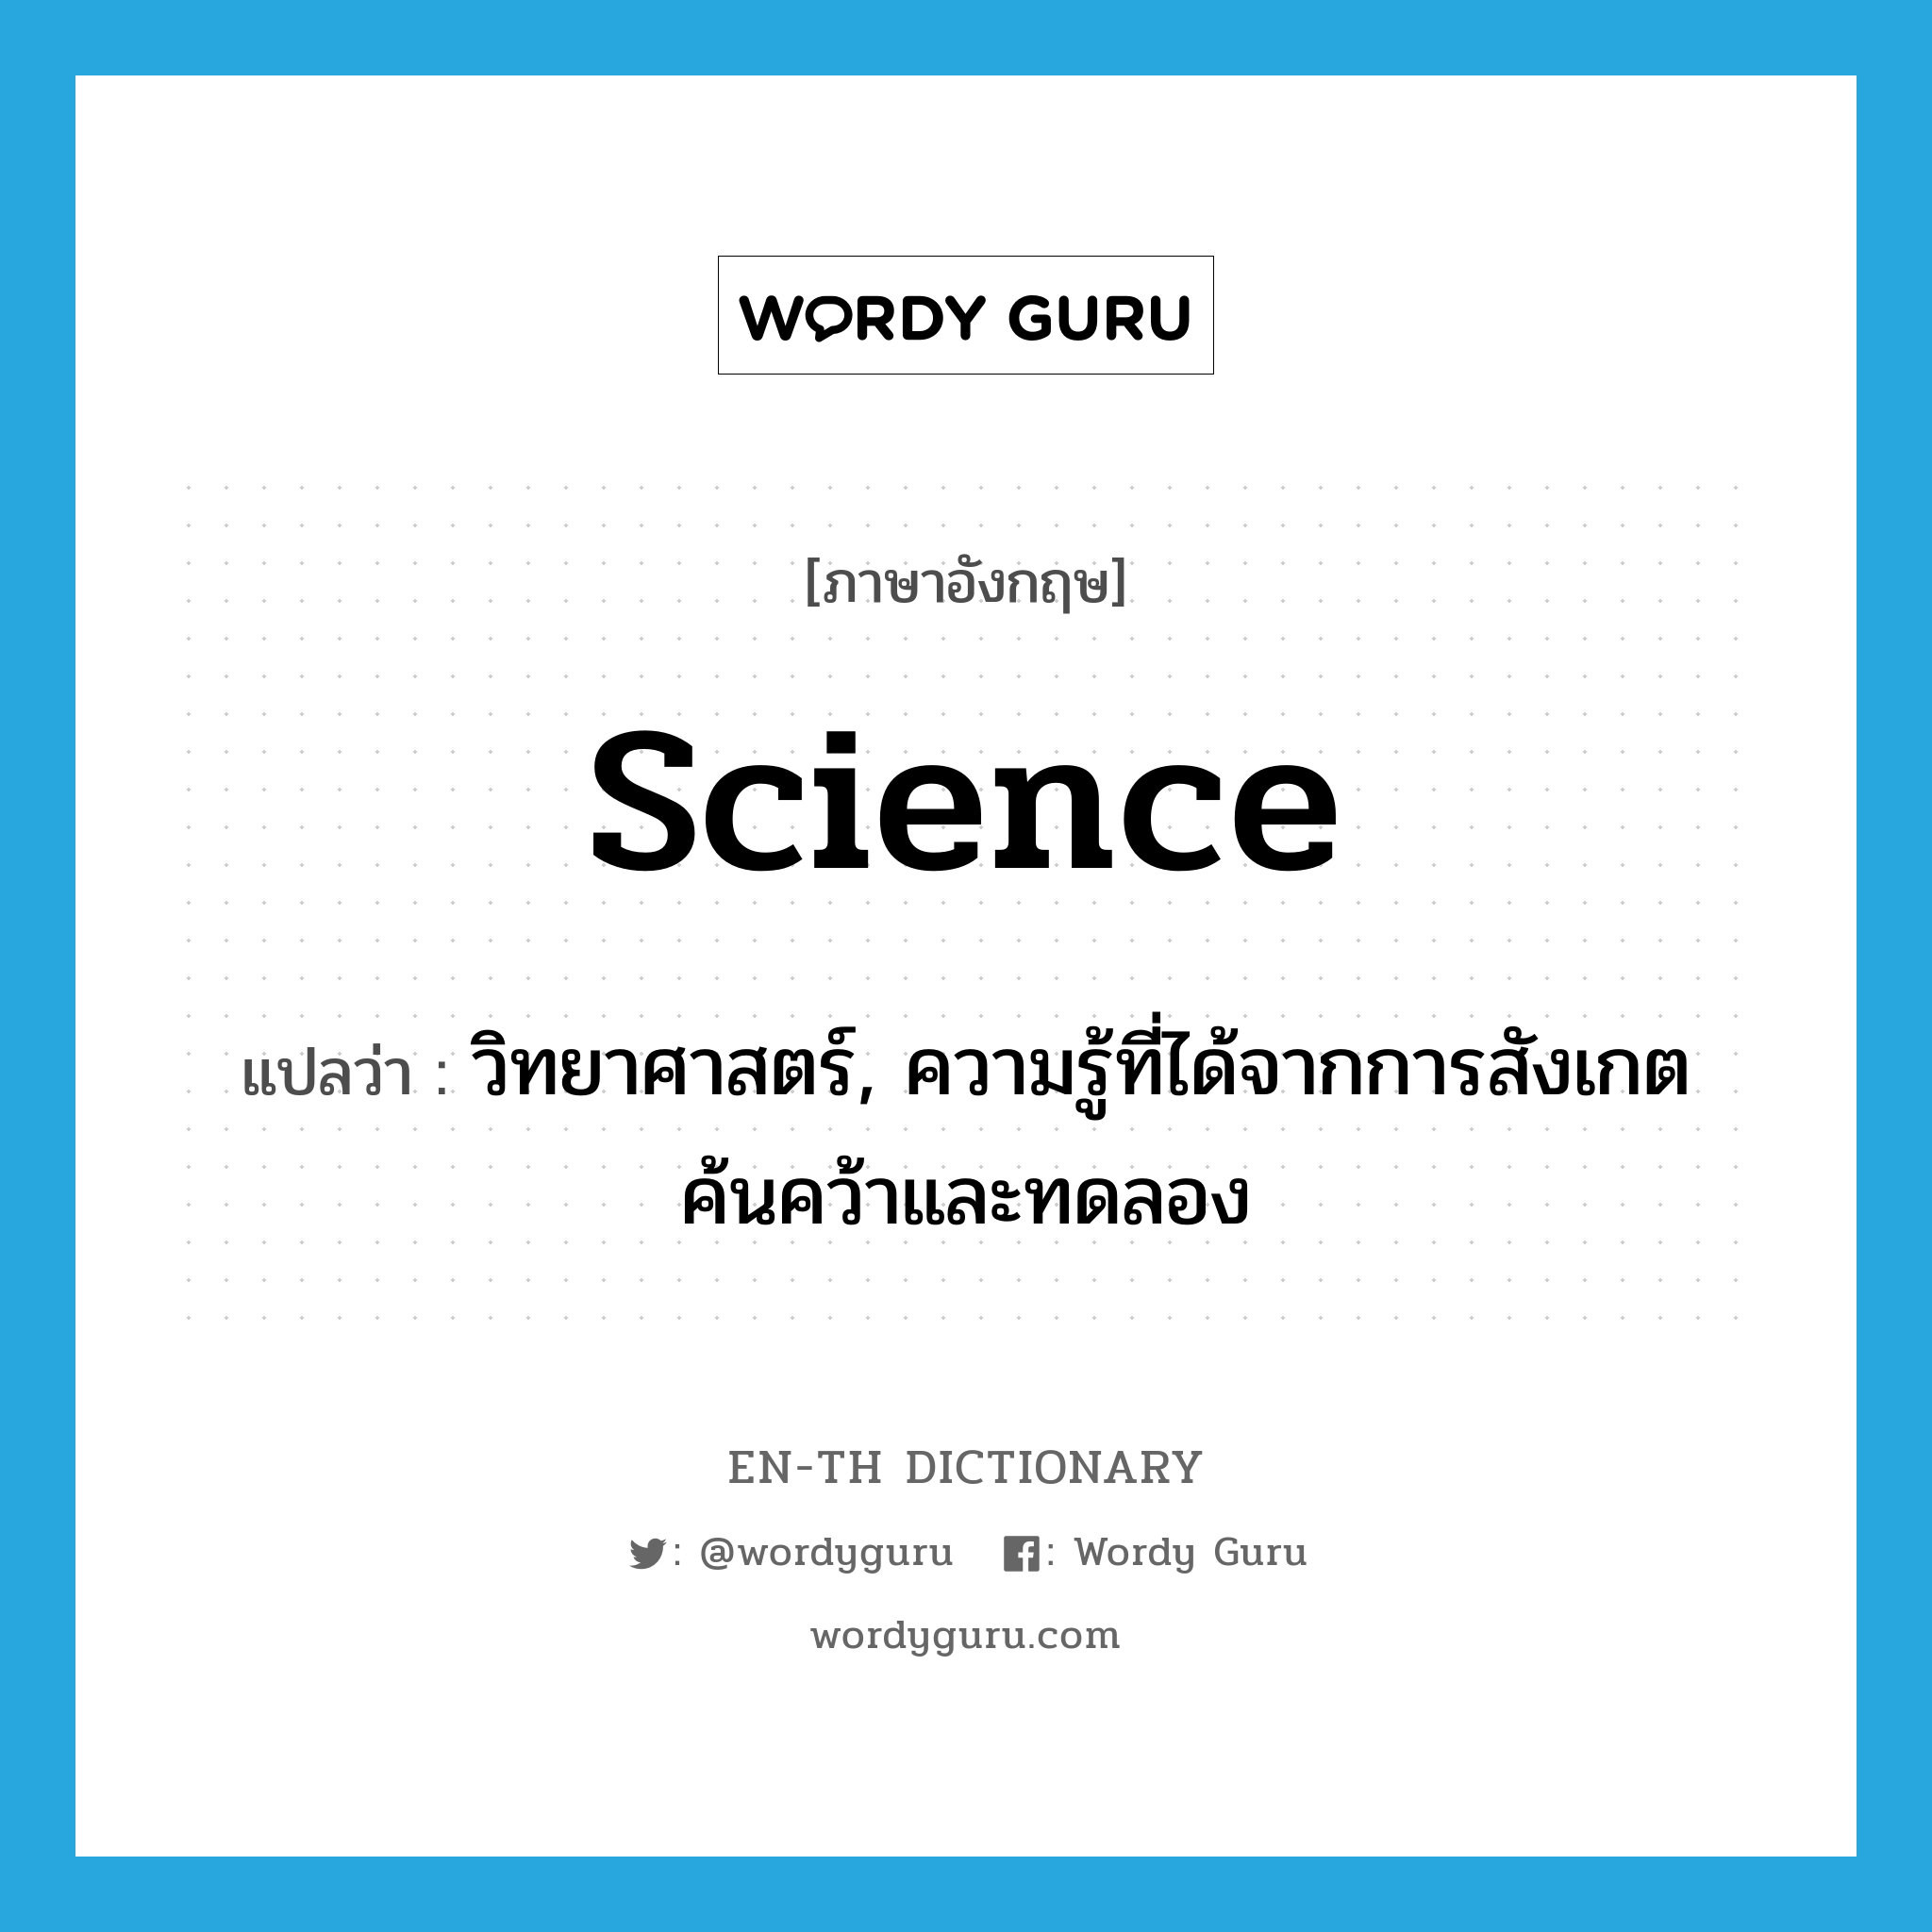 science แปลว่า?, คำศัพท์ภาษาอังกฤษ science แปลว่า วิทยาศาสตร์, ความรู้ที่ได้จากการสังเกต ค้นคว้าและทดลอง ประเภท N หมวด N